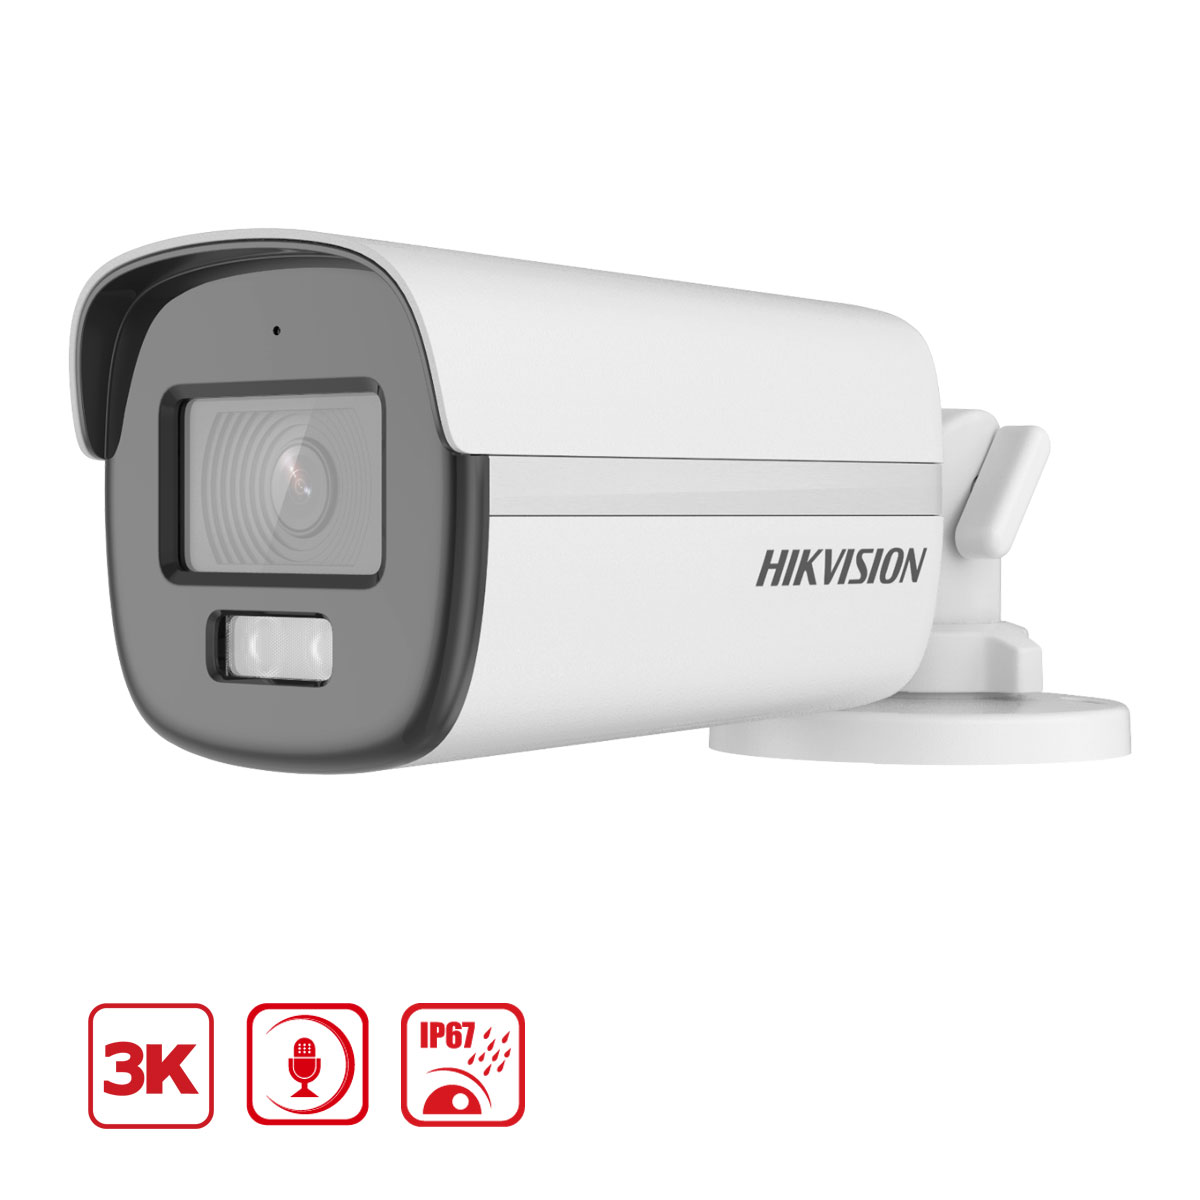 Camera colorvu Hikvision DS-2CE10KF0T-FS 3K, đèn LED 20m, tích hợp mic thu âm